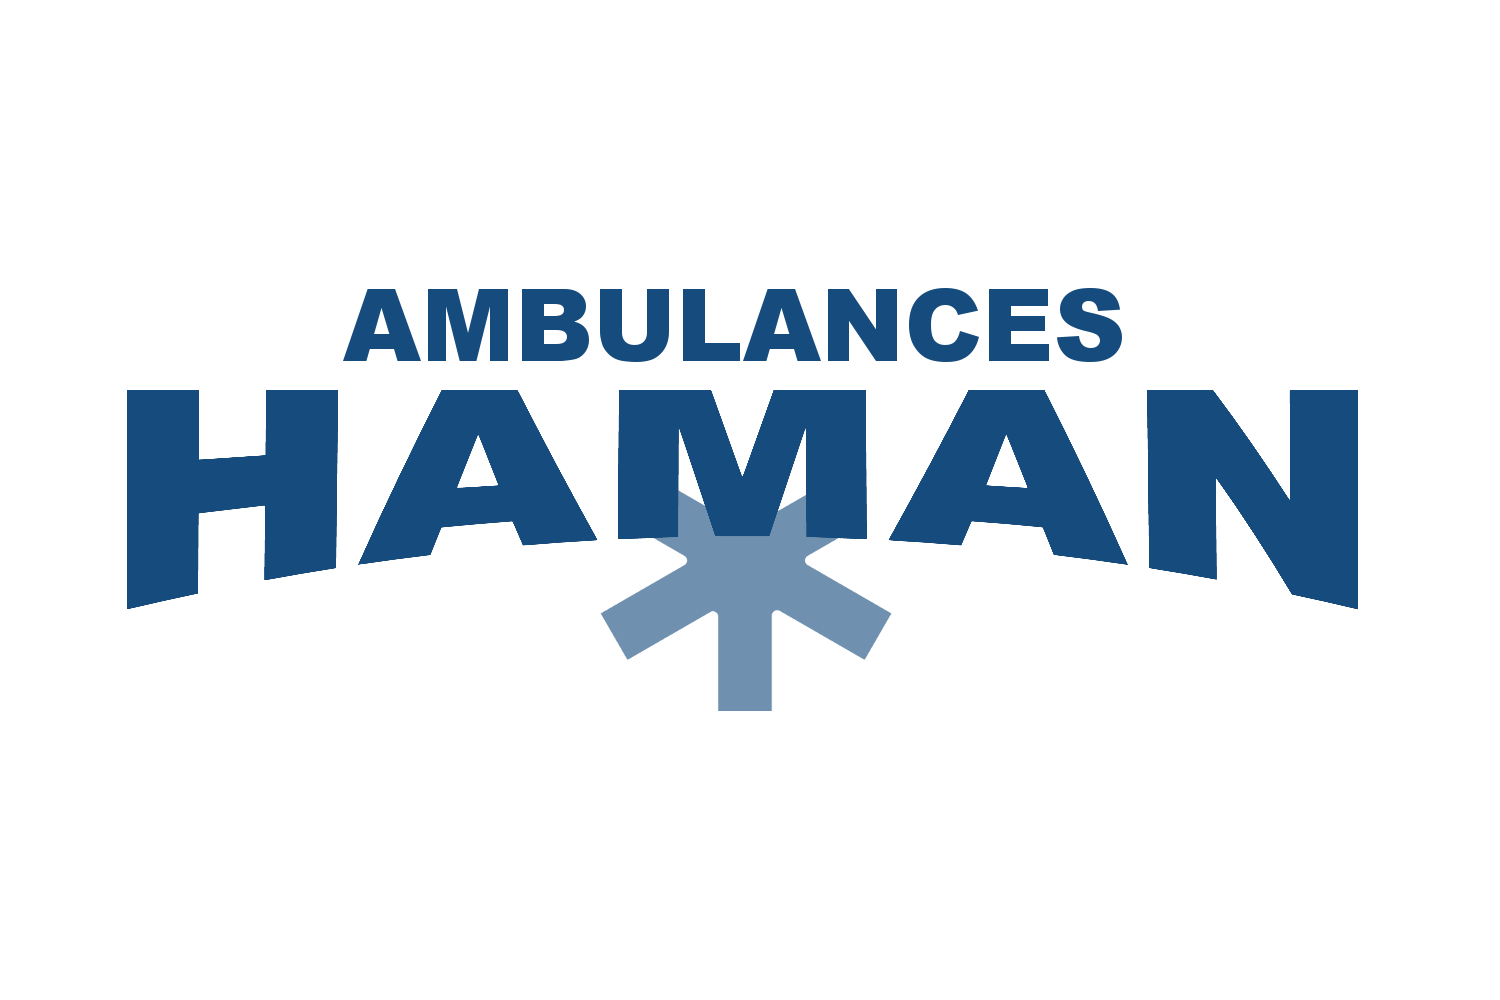 Ambulances Haman logo